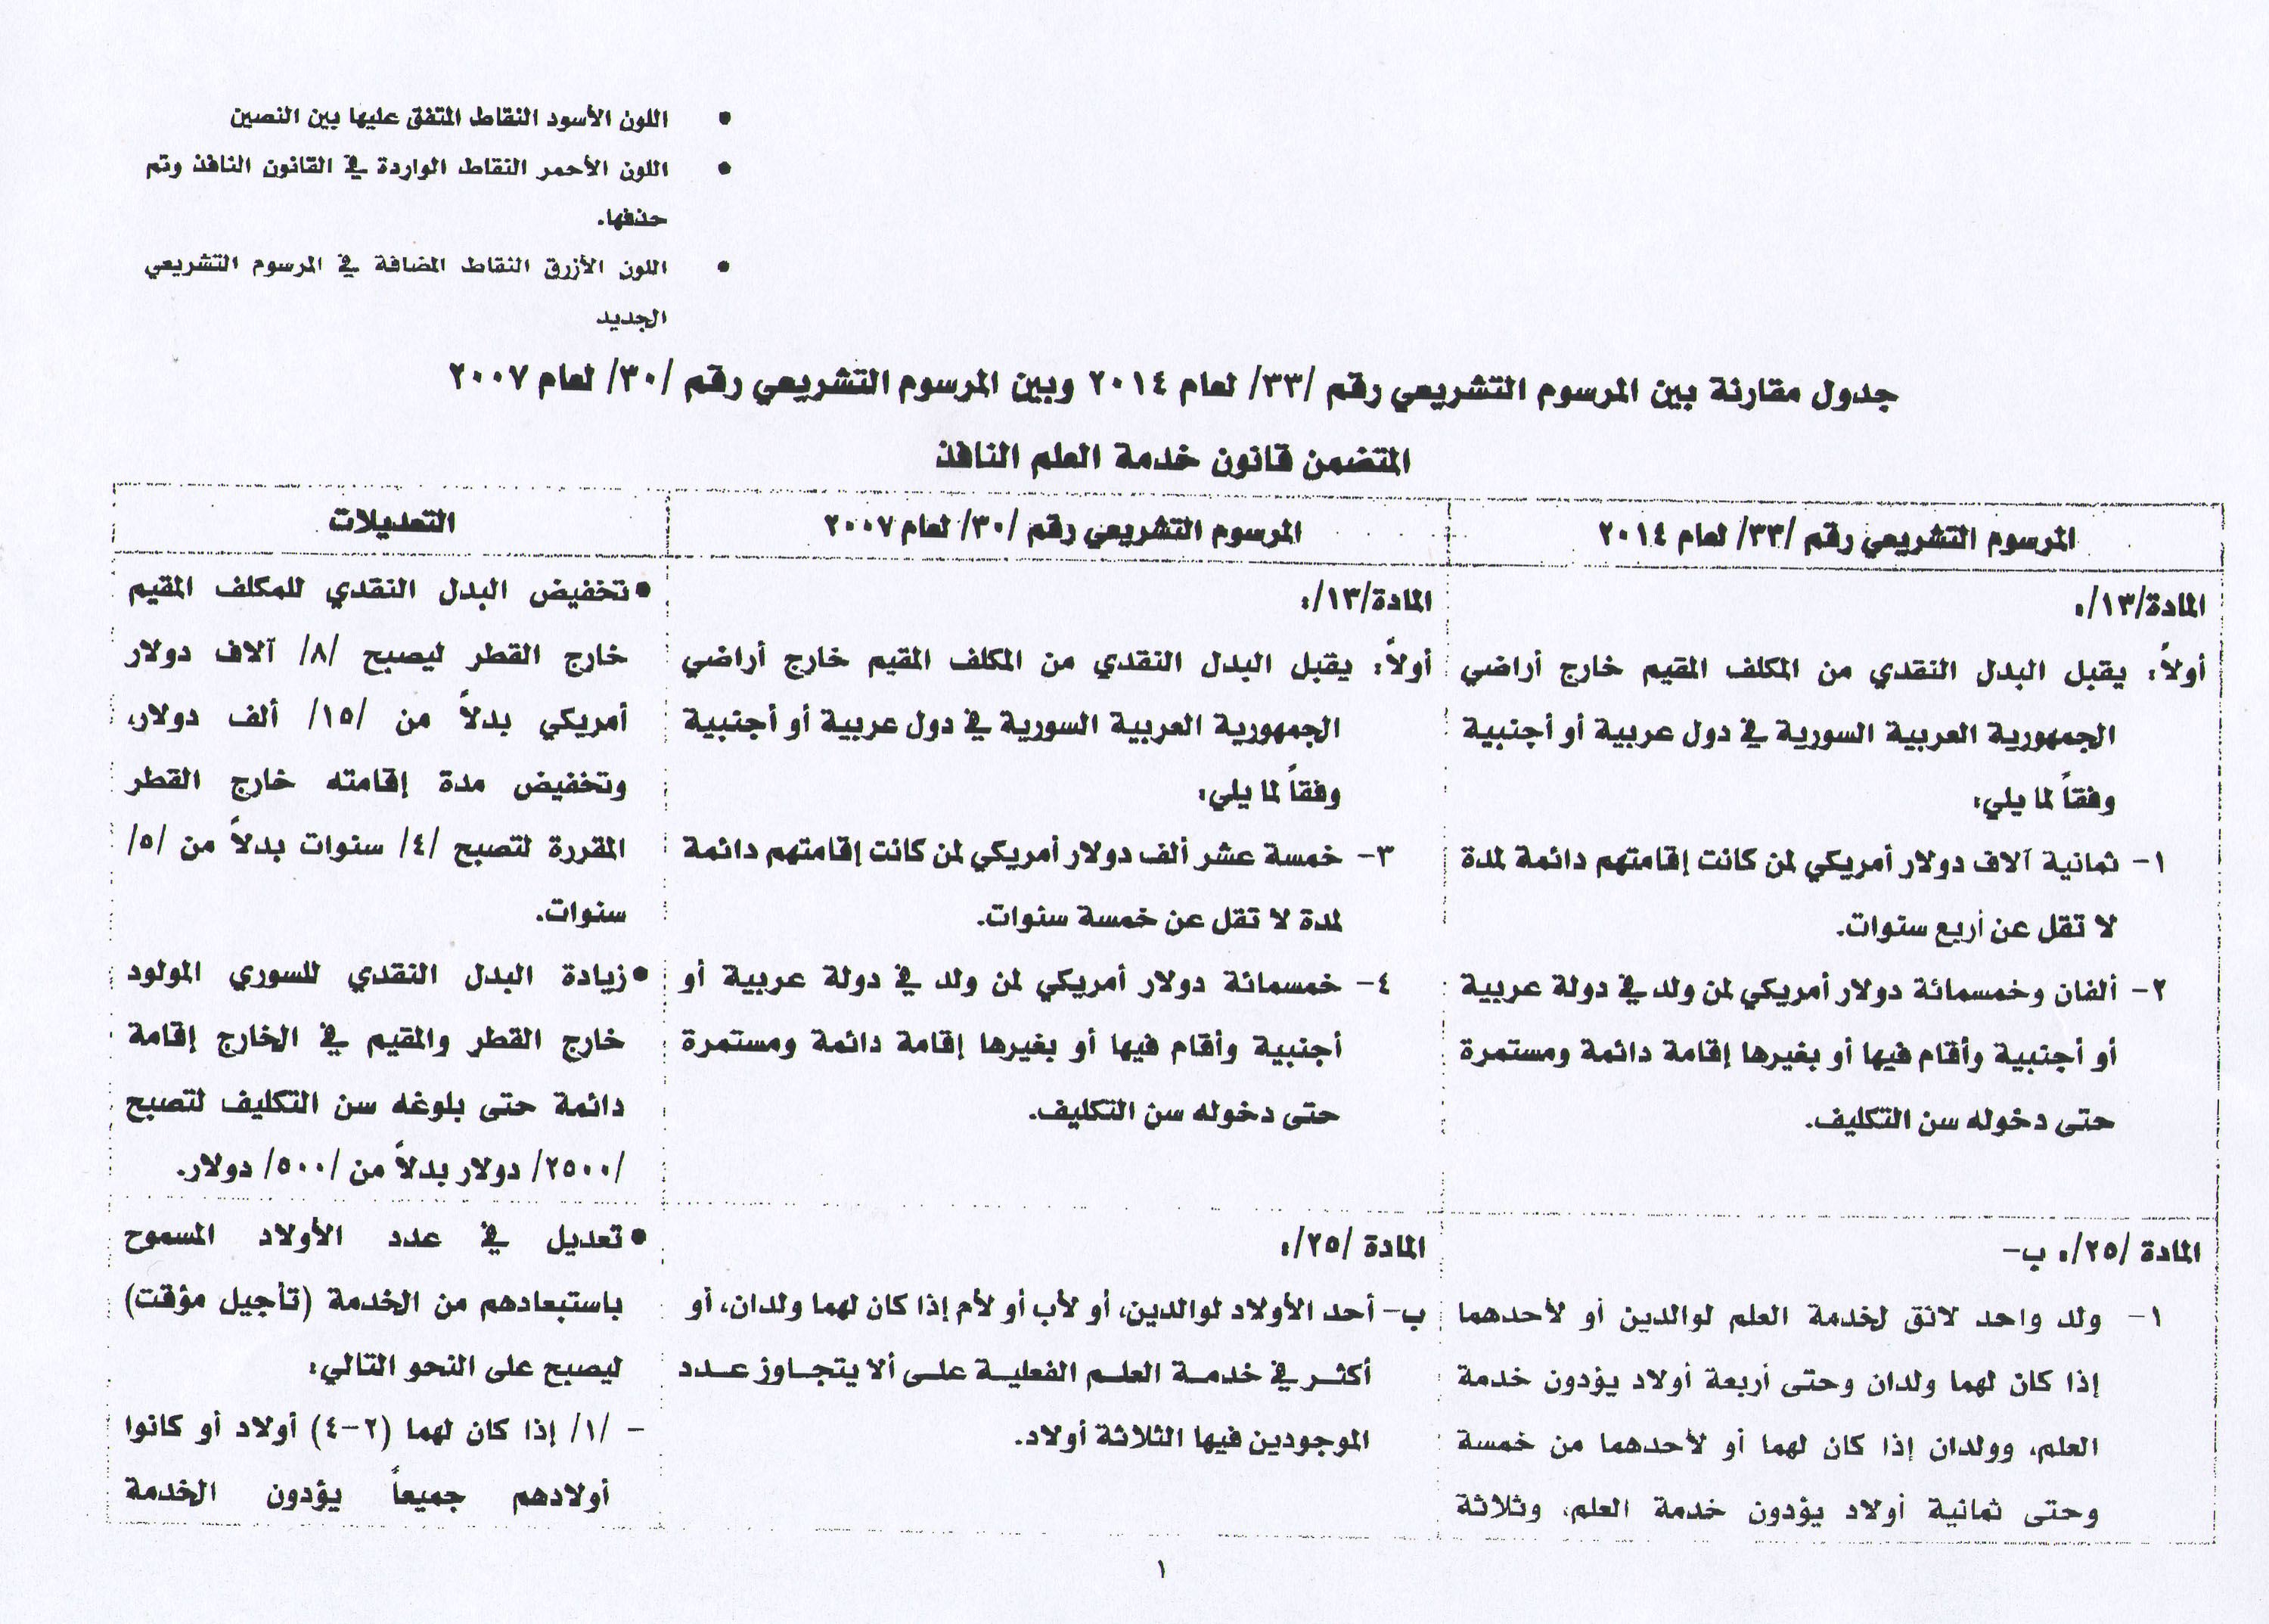 صورة للمرسوم التشريعي رقم 33 الذي صدر في ٢٠١٤ حول بدل الخدمة العسكرية ومقارنته مع المرسوم 30 الصادر 2007 - سانا